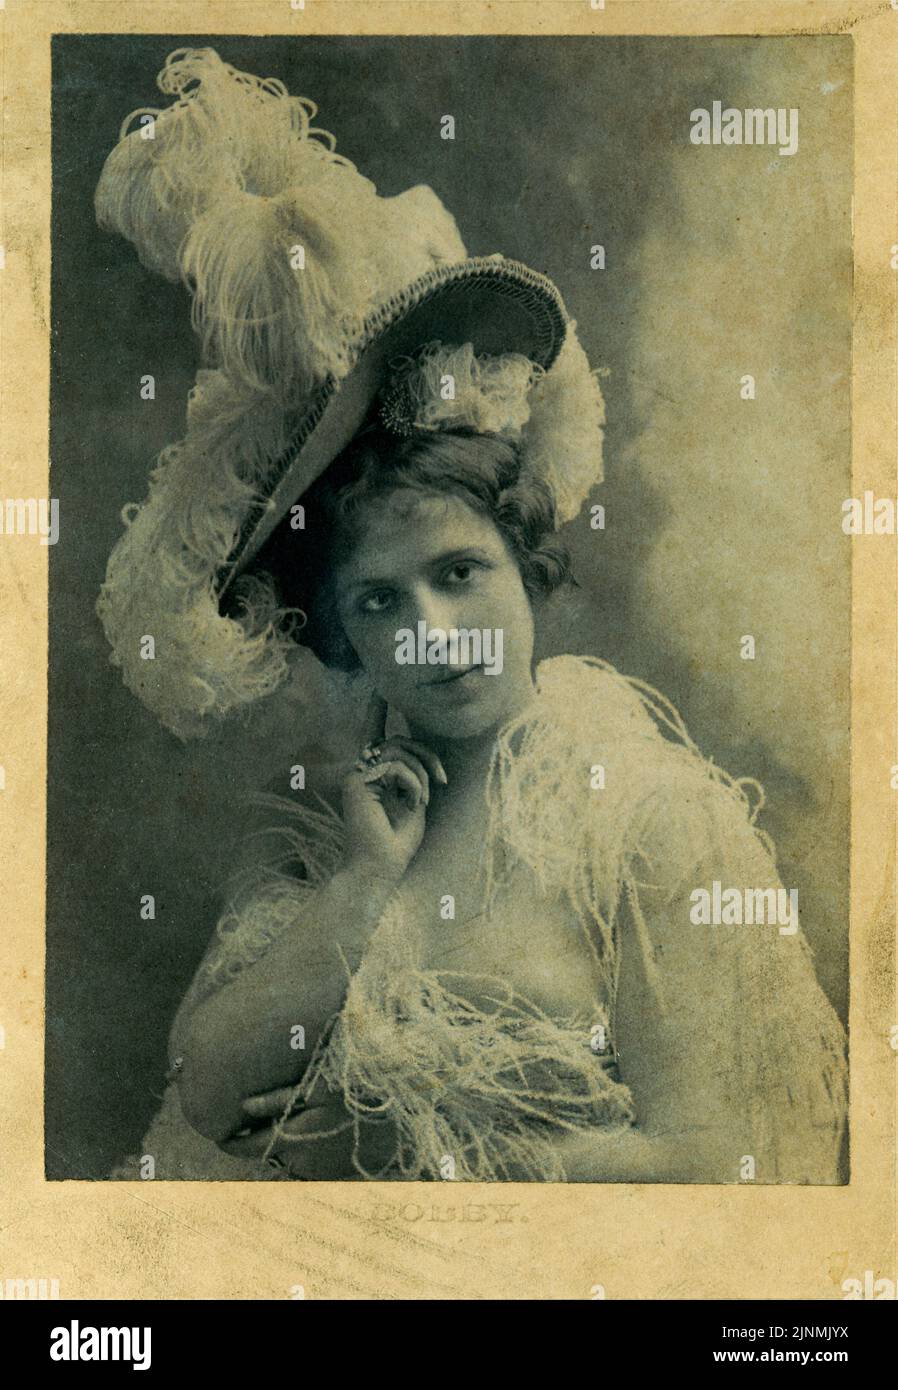 Pubblicità Vintage Photo Portrait of Celebrity attrice and Singer Bobby Burns dal tardo 19th ° secolo indossando un elegante cappello di piuma circa 1880 Foto Stock